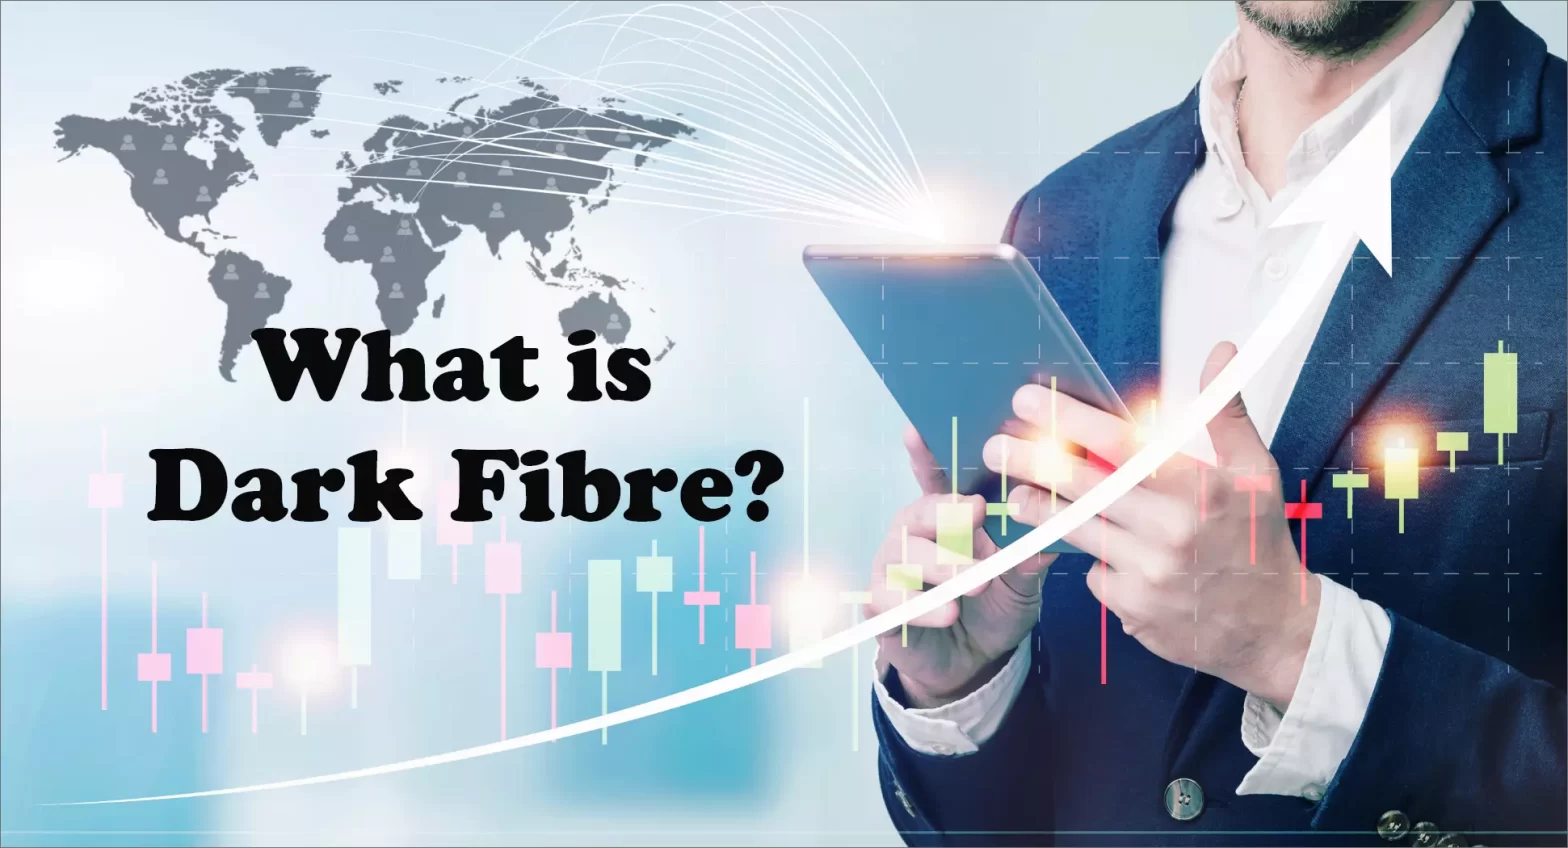 Explore what dark fibre is?